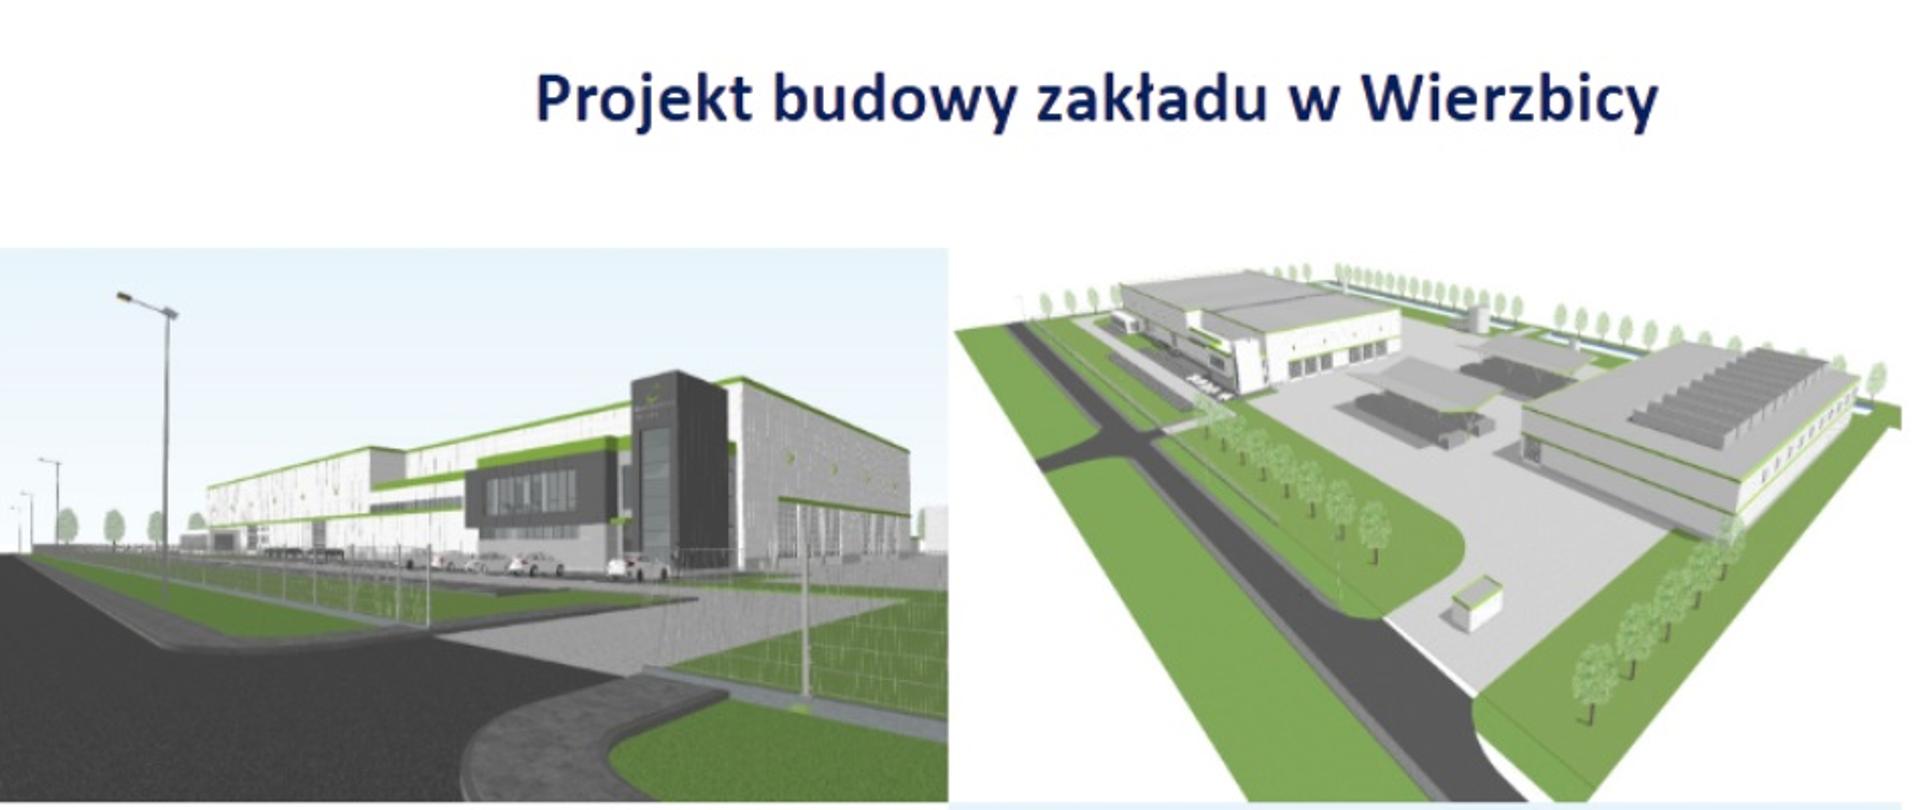 Projekt firmy Bioelektra realizowany na terenie Gminy Wierzbica 